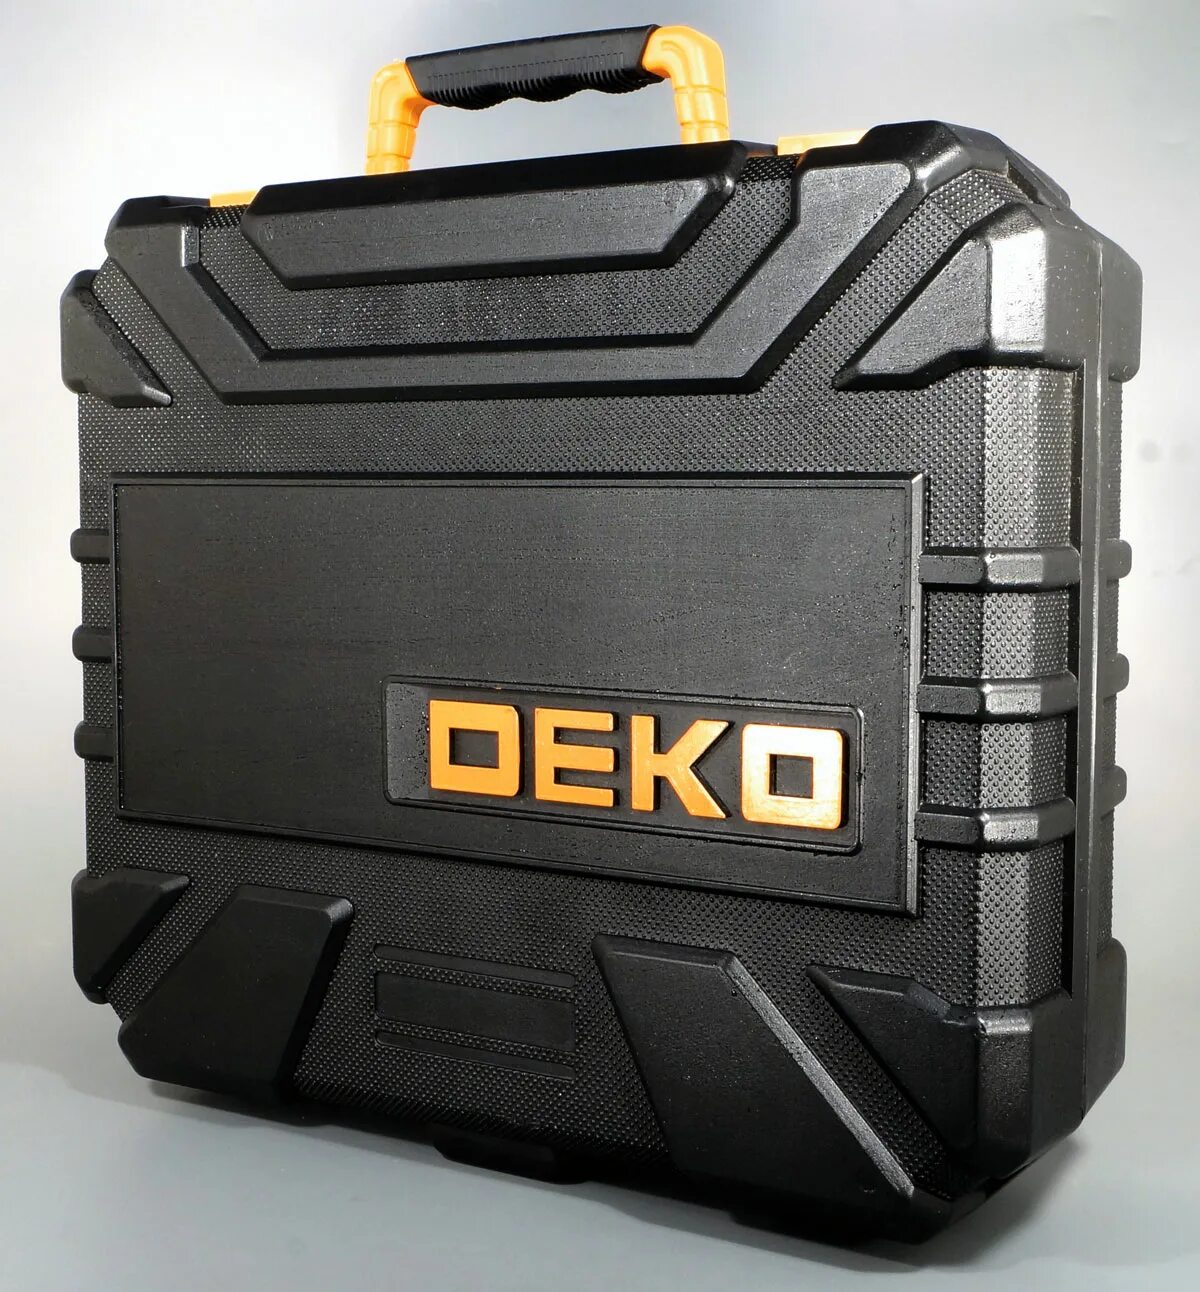 Деко аккумулятор купить. Dkcd12-li. Аккумулятор 20 v deco для Deko dkag20-125. Deko.